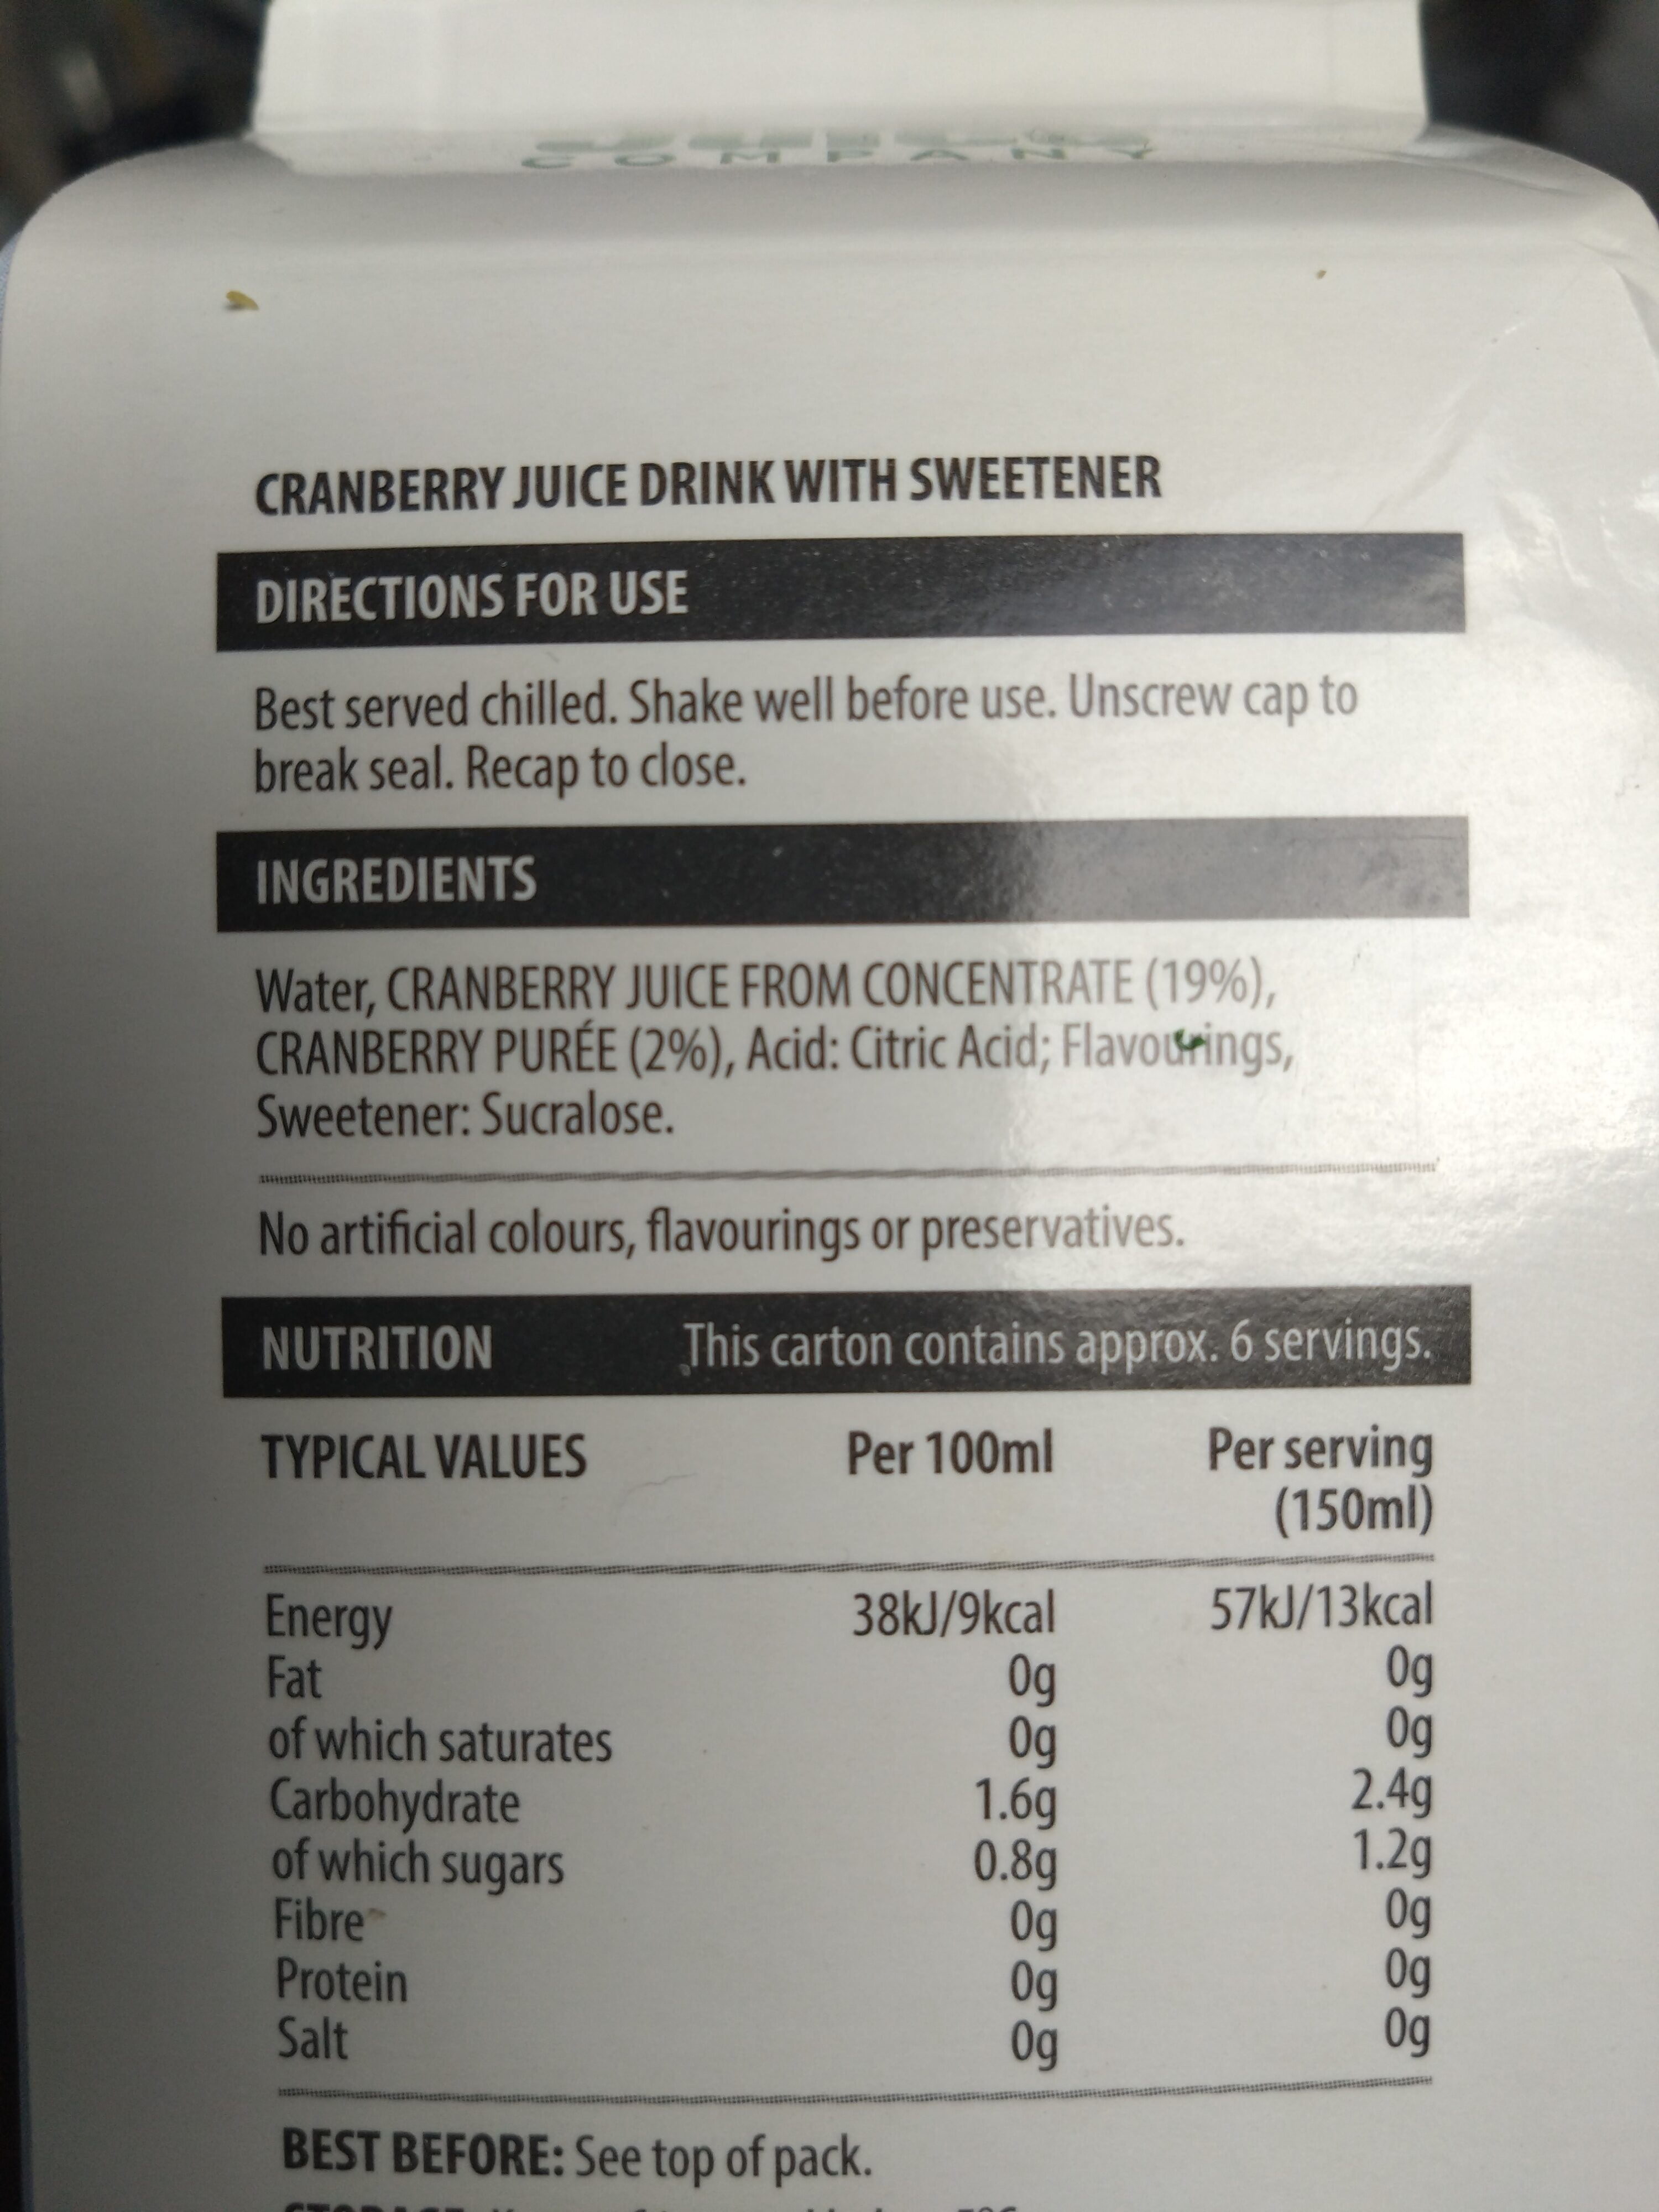 Cranberry juice drink - Ingredients